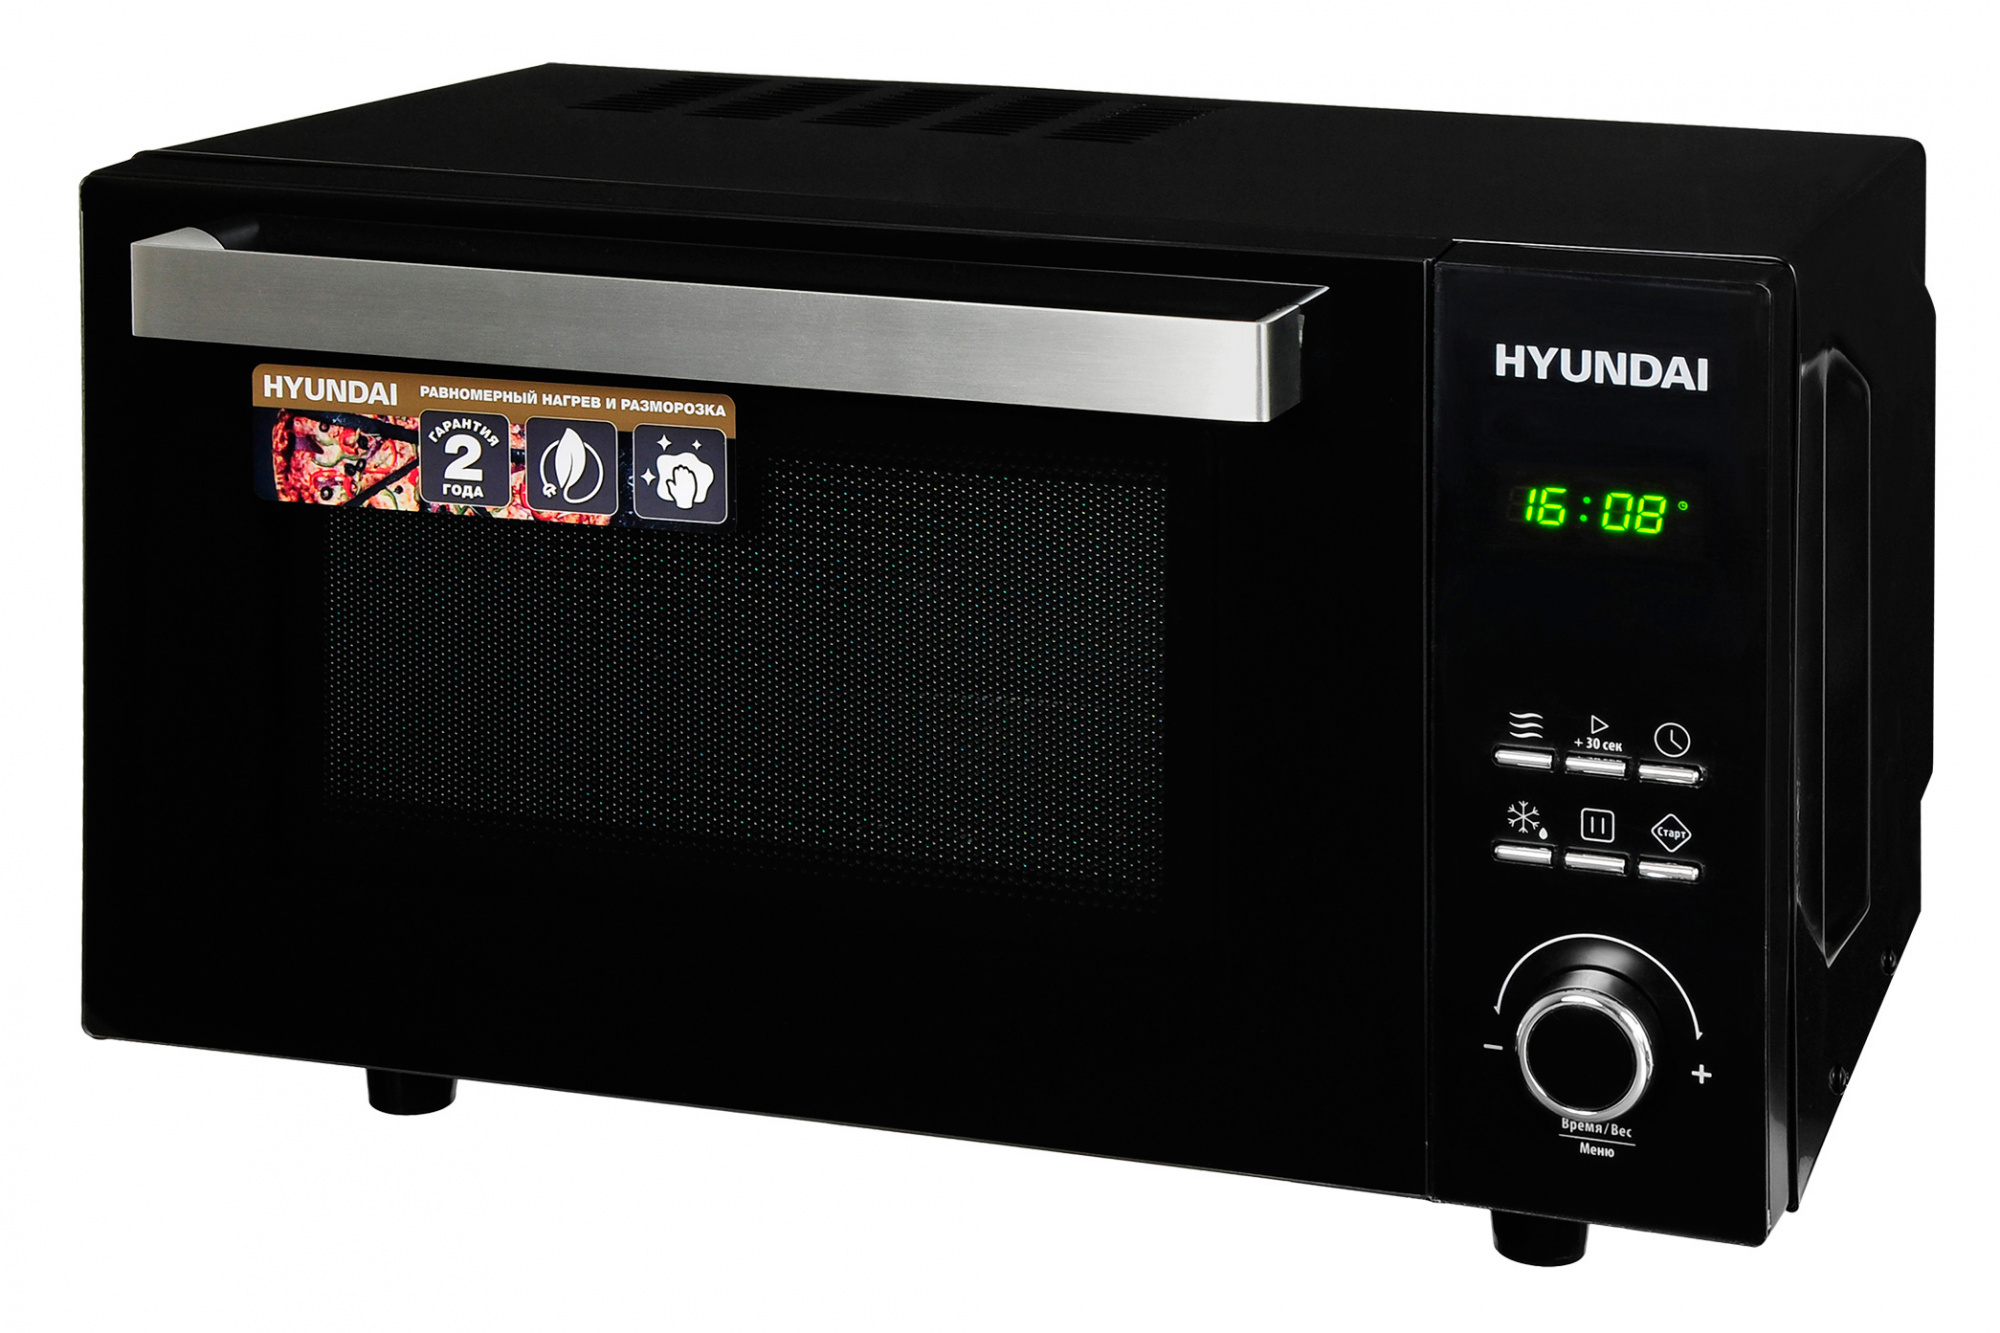 Микроволновая печь соло HYUNDAI HYM-D2073 черный микроволновая печь свч hyundai hym m2061 20л 700вт